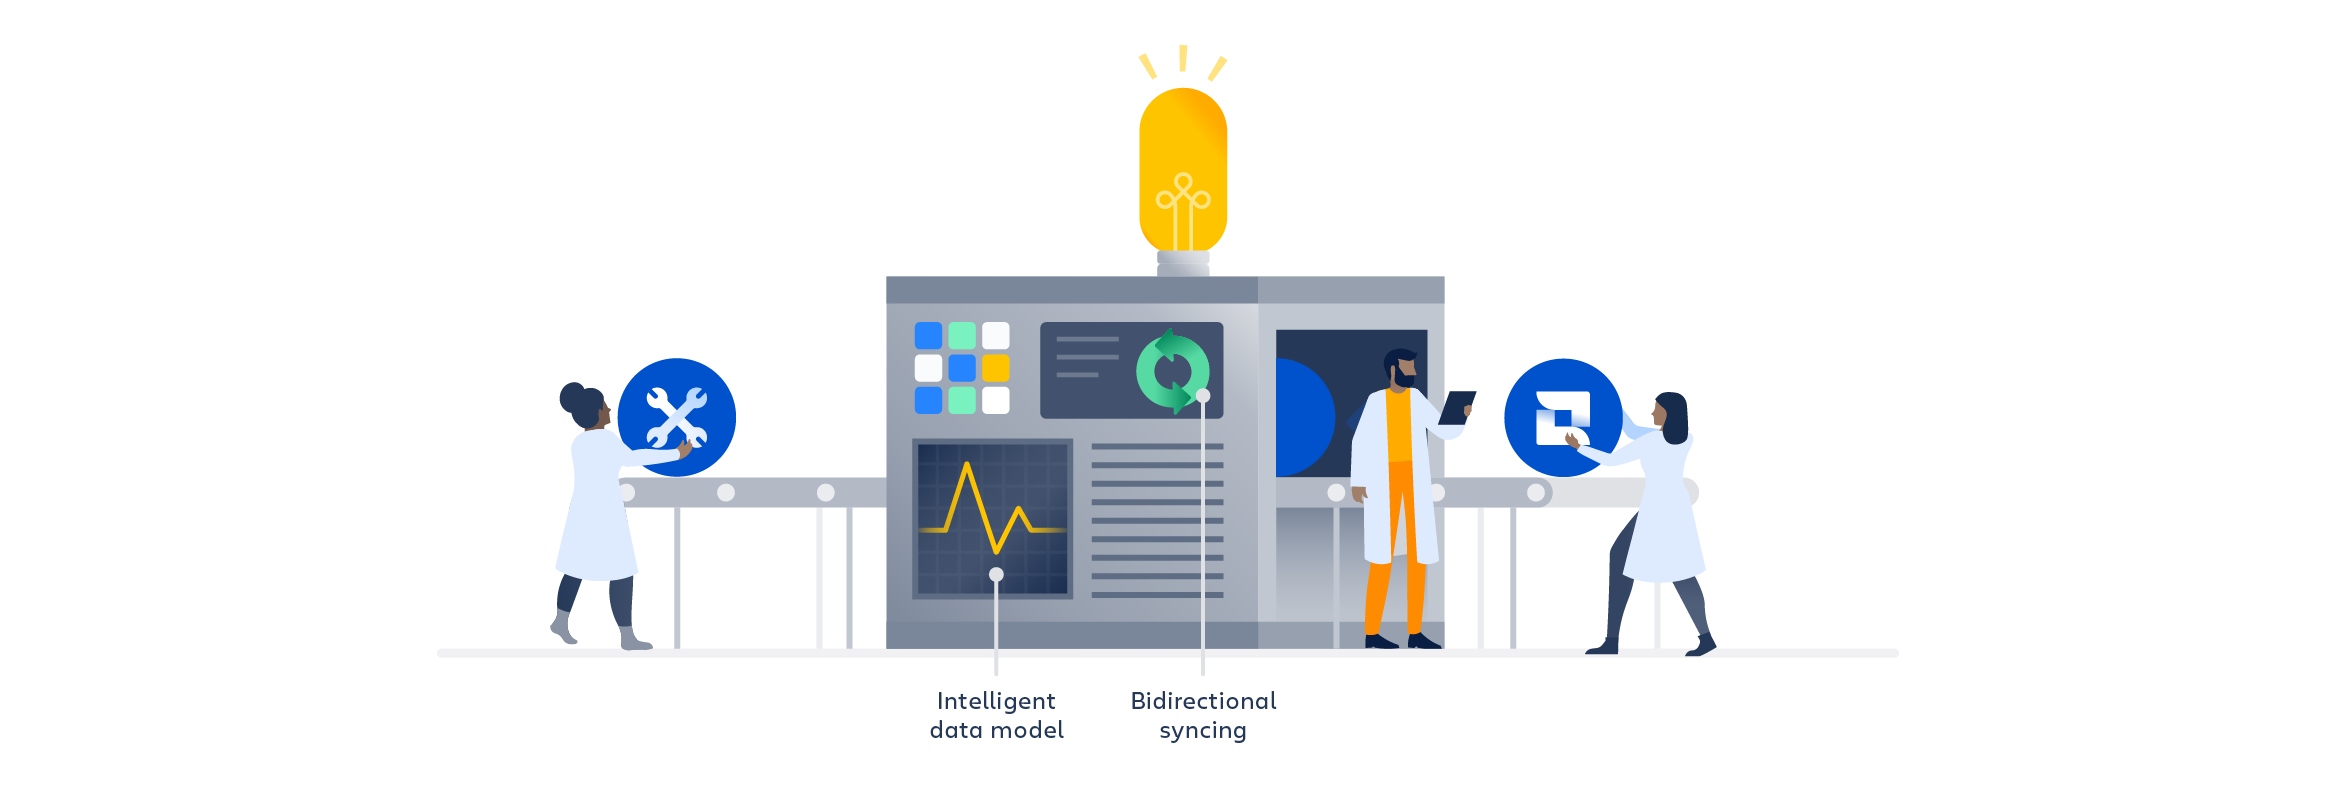 Iconos de herramientas de software de Atlassian que entran en una máquina, crean un modelo de datos inteligente y realizan una sincronización bidireccional.